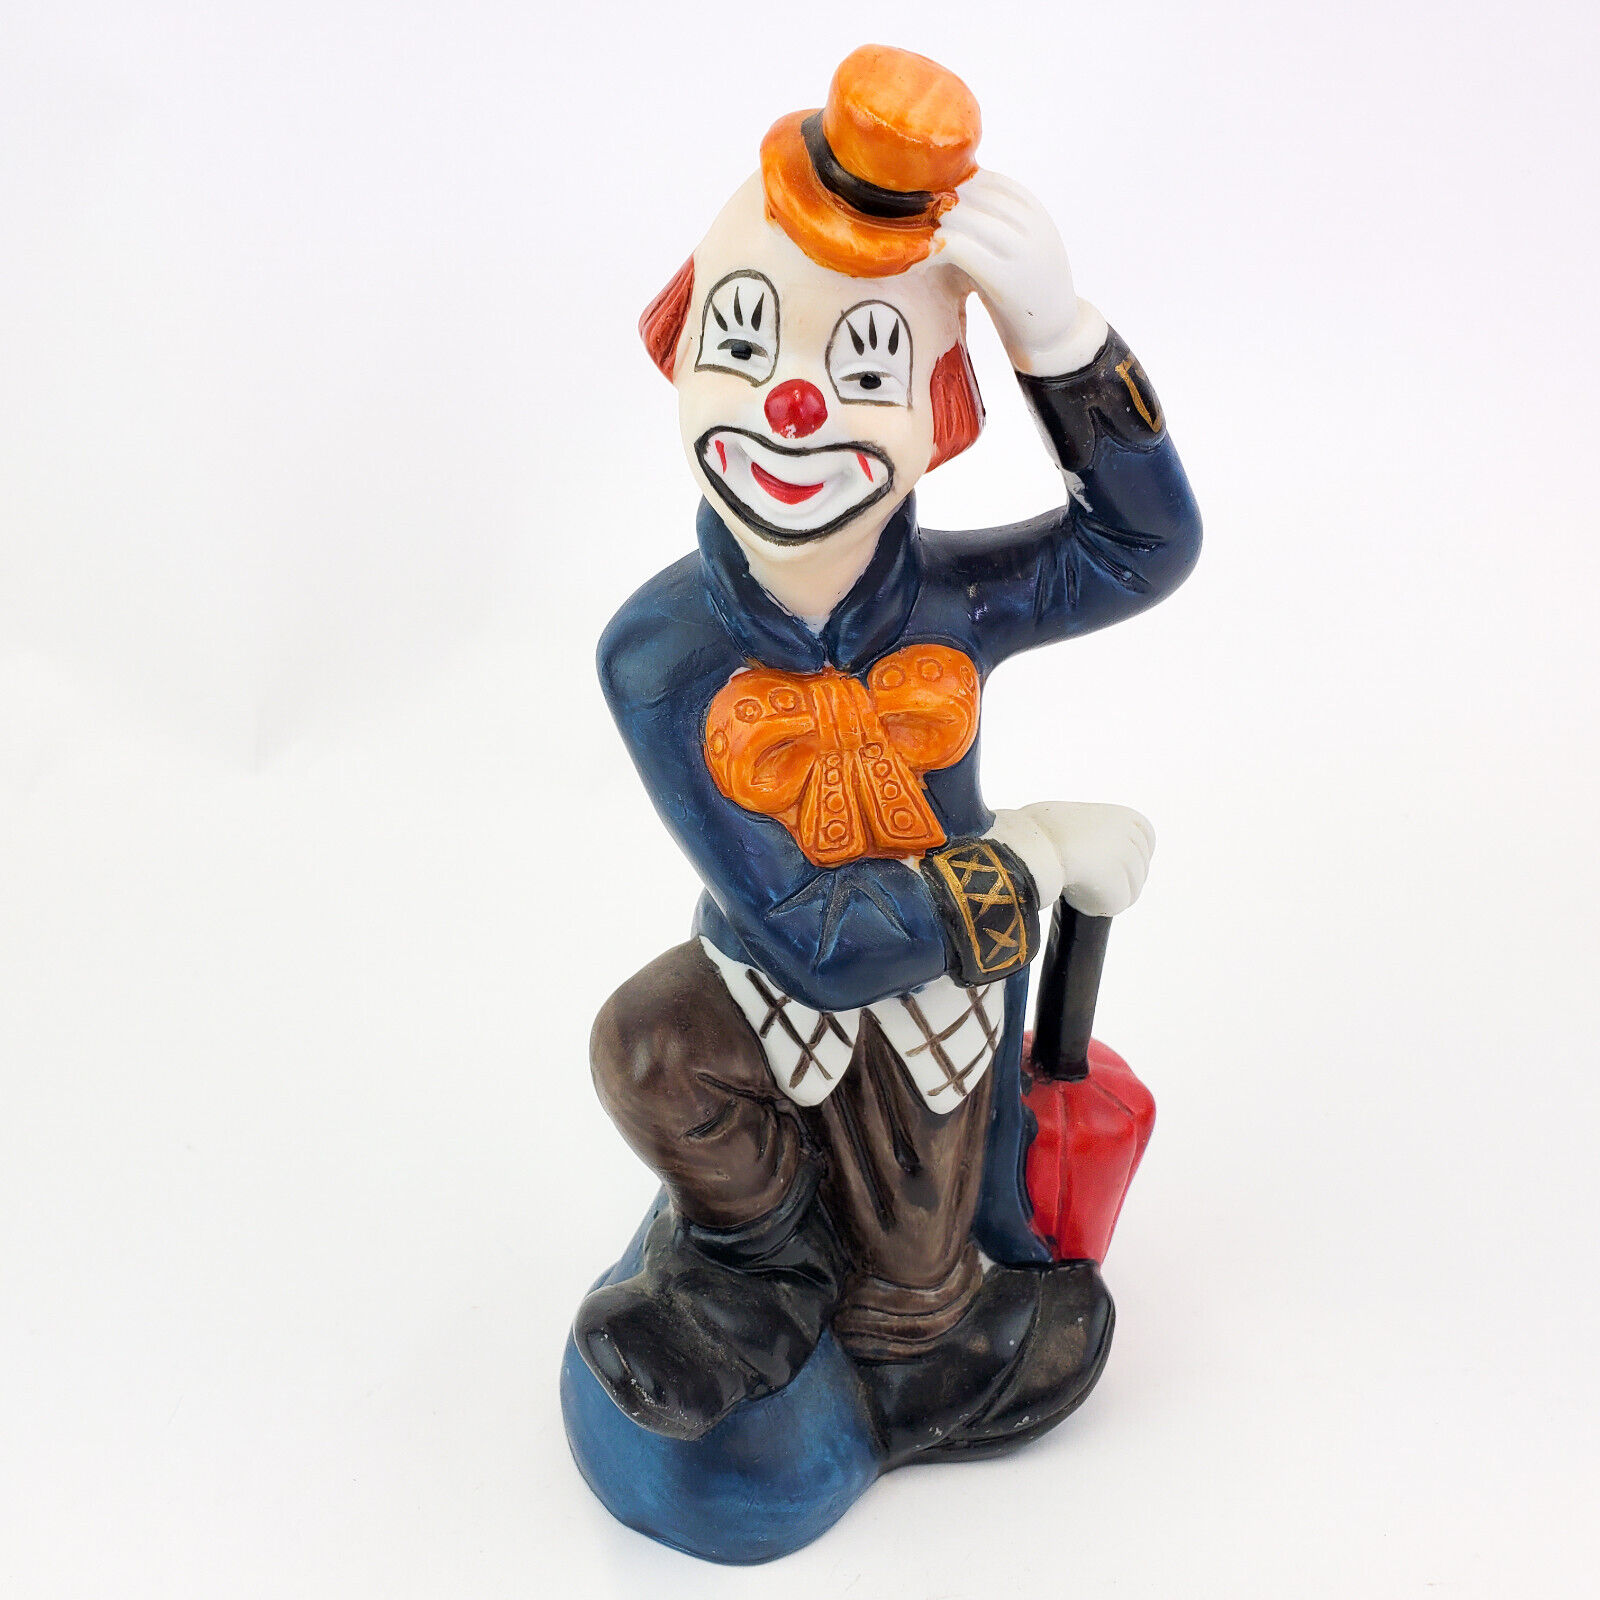 UOGC Taiwan Ceramic Hand Painted Clown Figurine Umbrella Hat Vintage Circus